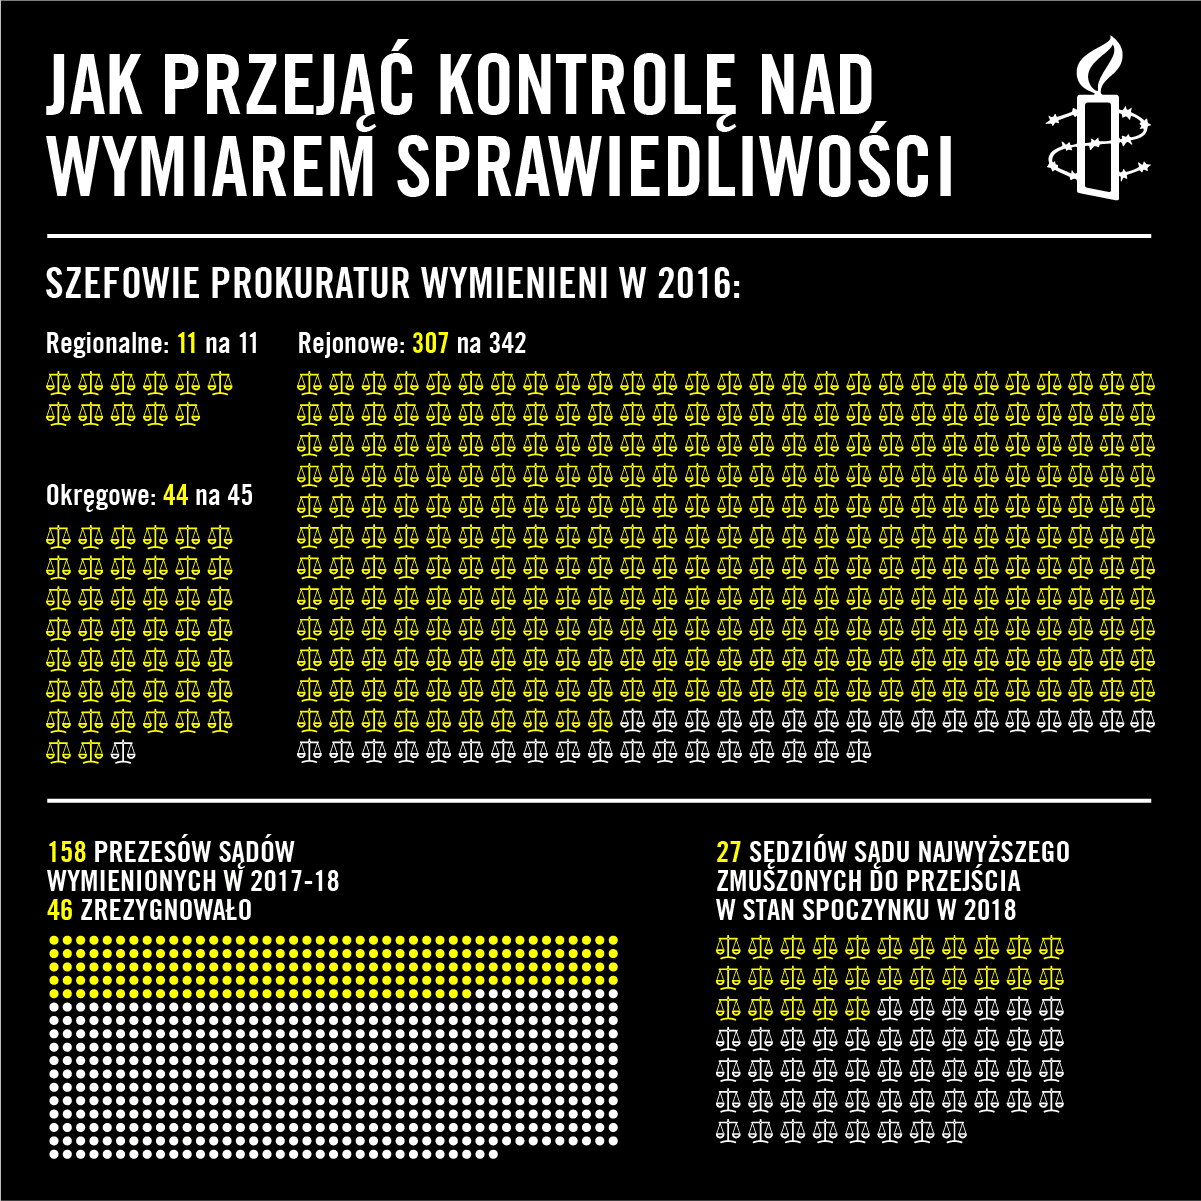 statystyki po polsku judiciary in Poland SM POLISH